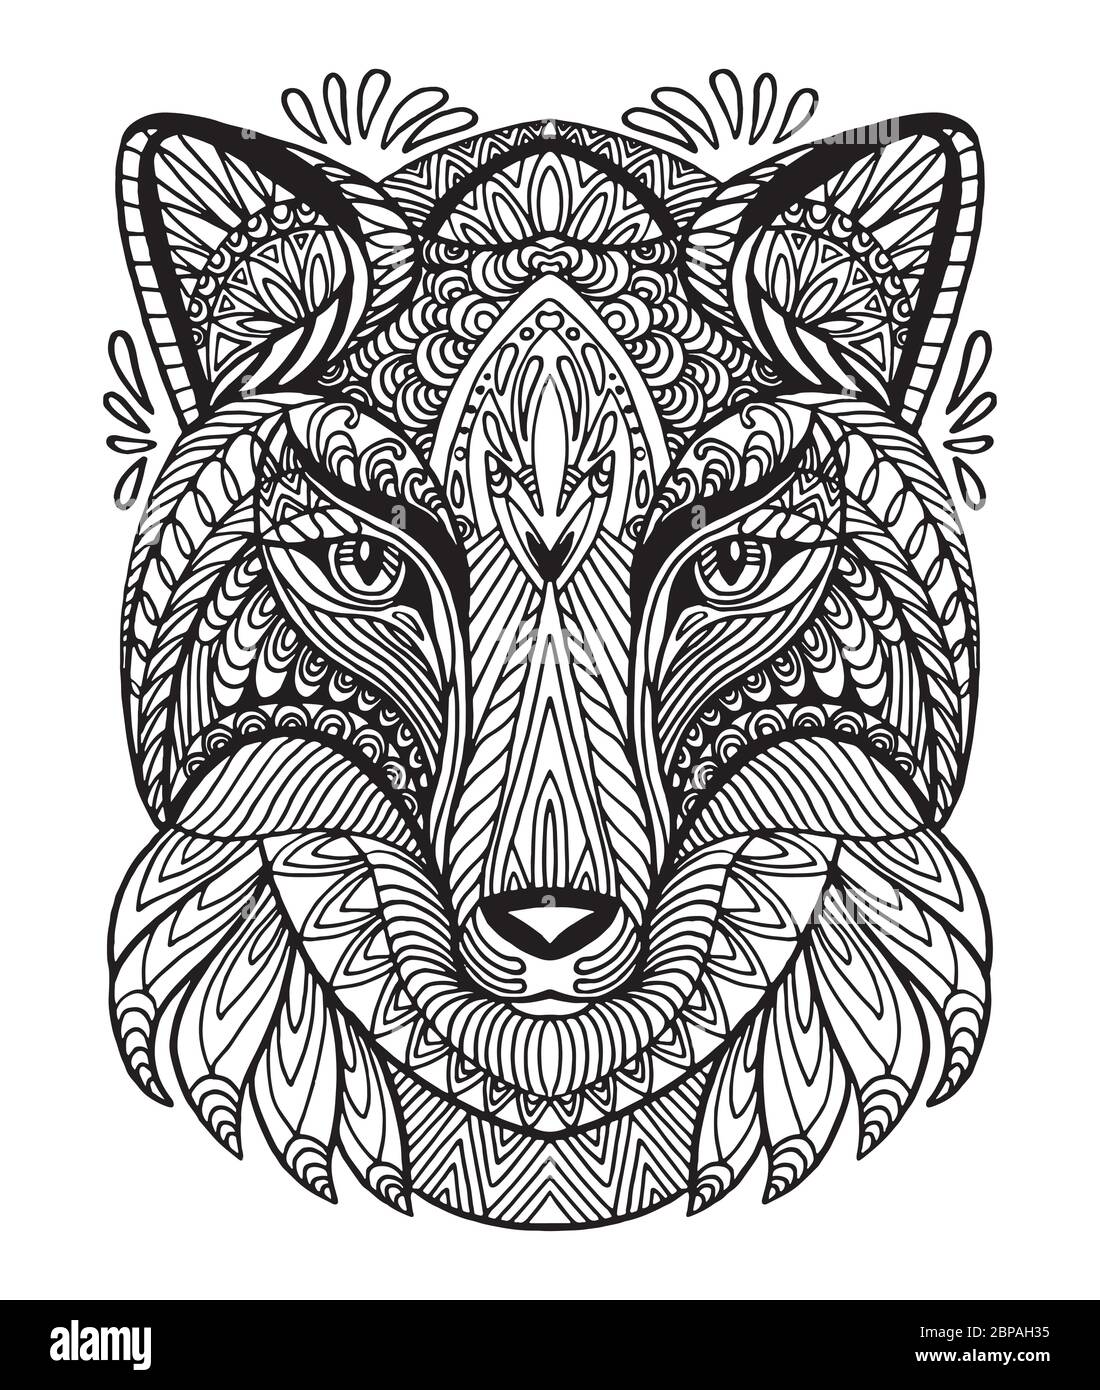 Vettore decorativo doodle testa ornamentale di volpe. Illustrazione vettoriale astratta del contorno nero della volpe isolato su sfondo bianco. Illustrazione del magazzino Illustrazione Vettoriale